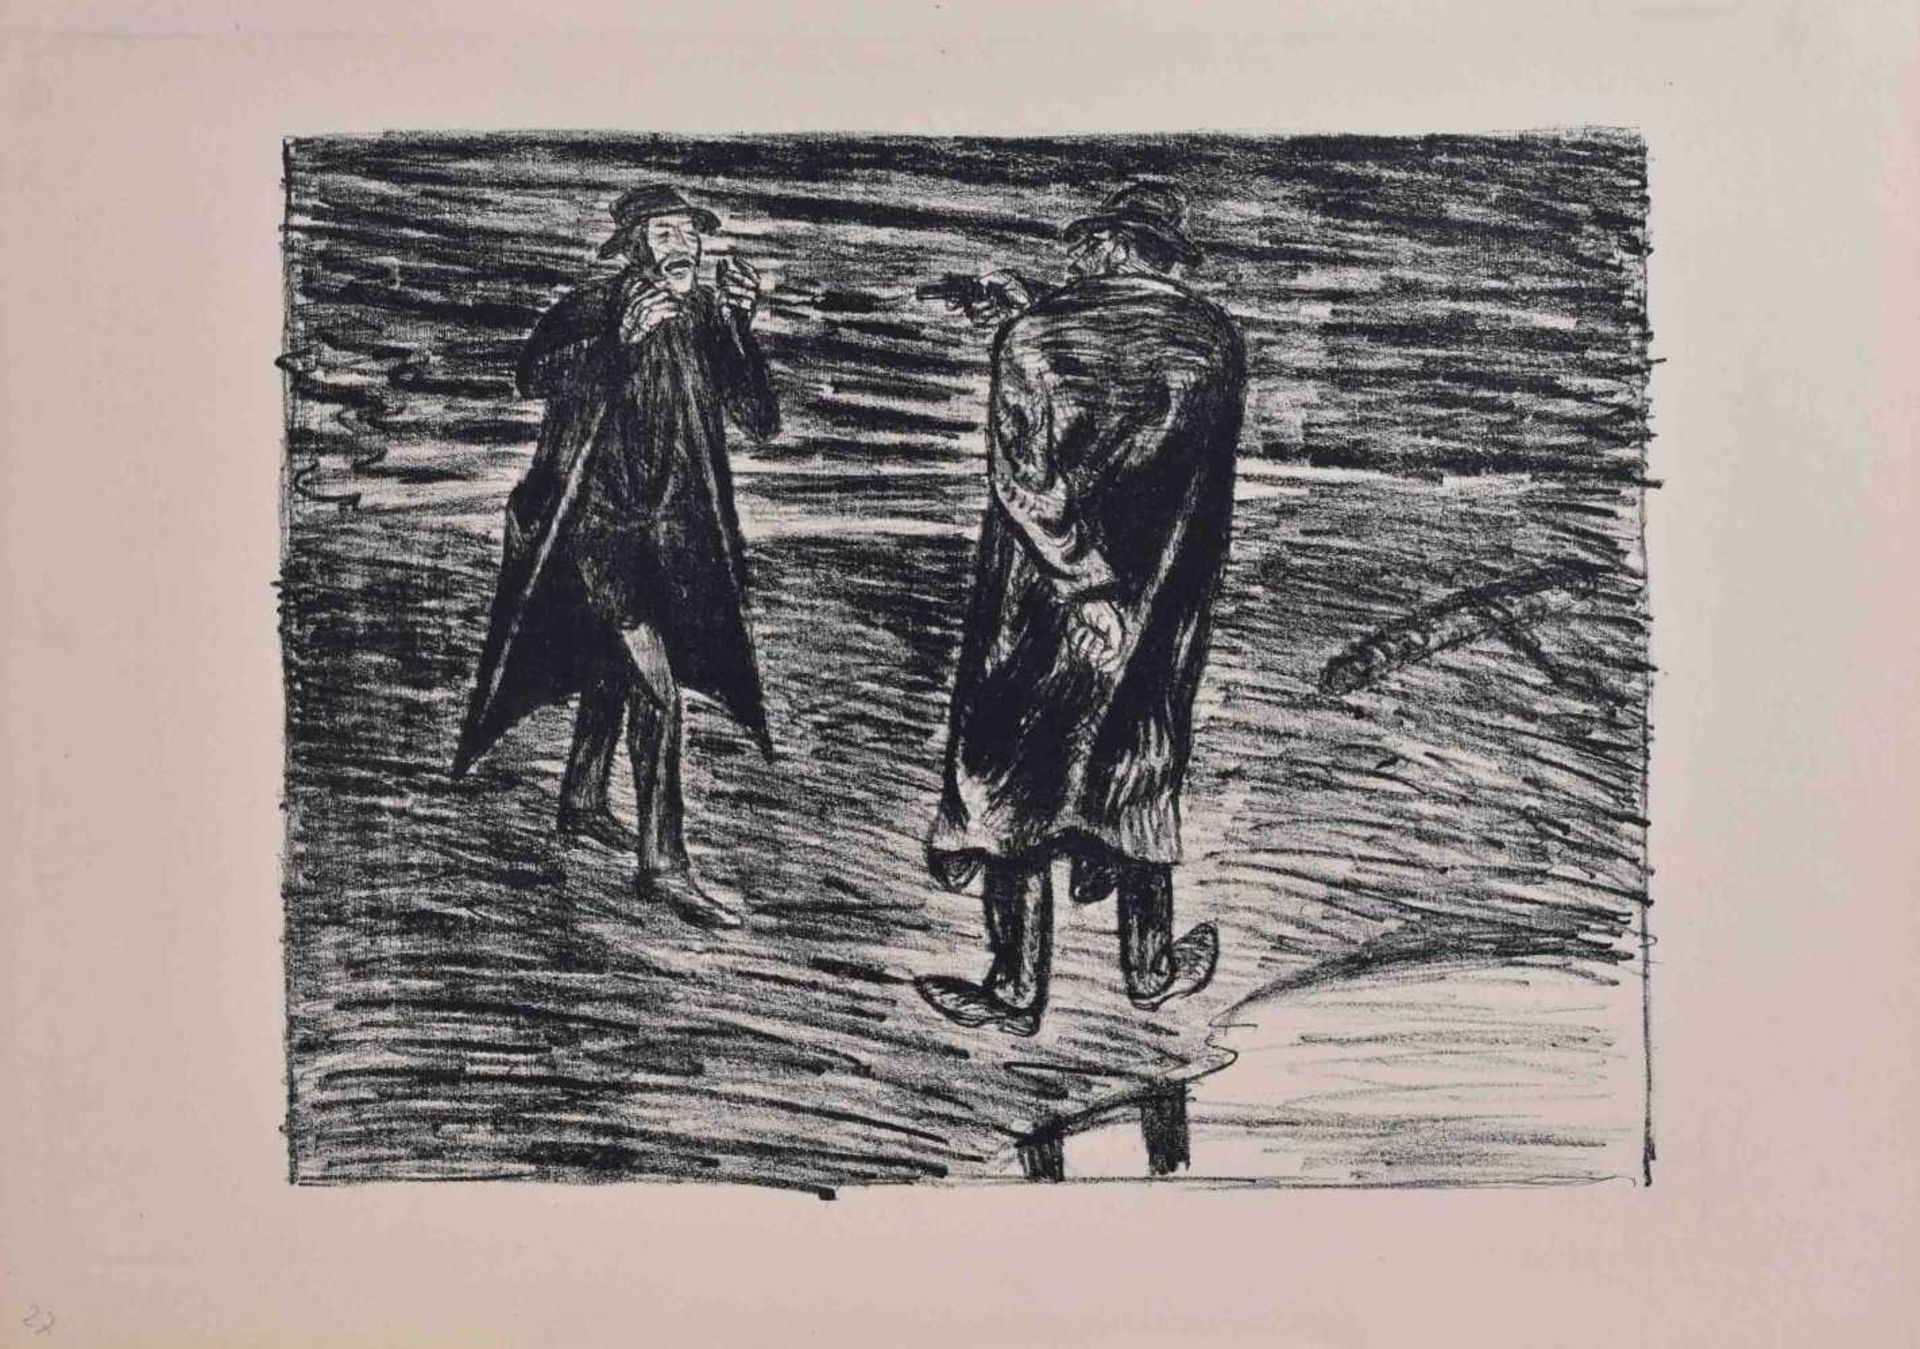 Ernst BARLACH (1870-1938)"Der Mord"Grafik-Lithographie, Maße 34 cm x 49 cm,2 % Bildkunst/ - Bild 2 aus 4